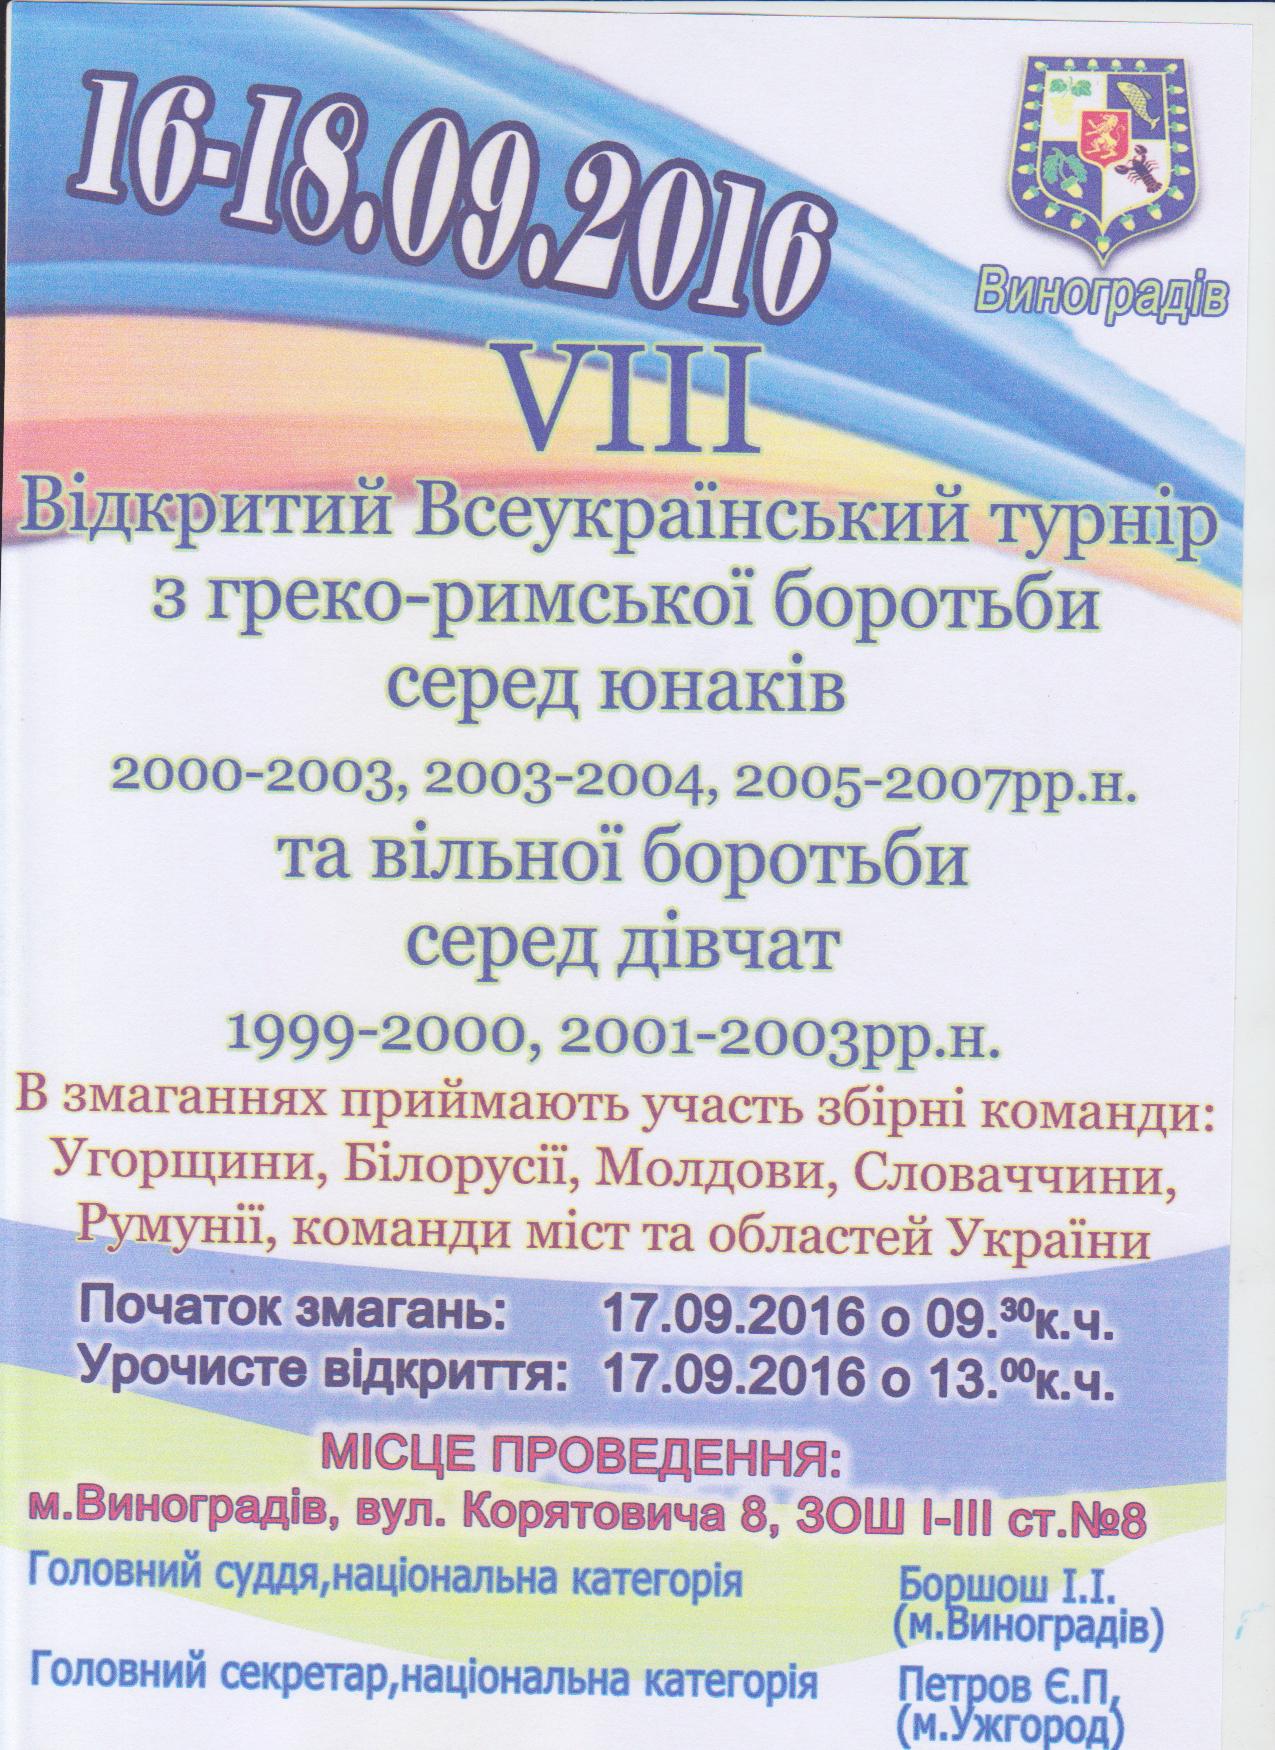 В турнире примут участие юноши 2000-2007 годов. Также состоится турнир по вольной борьбе среди девушек 1999-2003 годов.